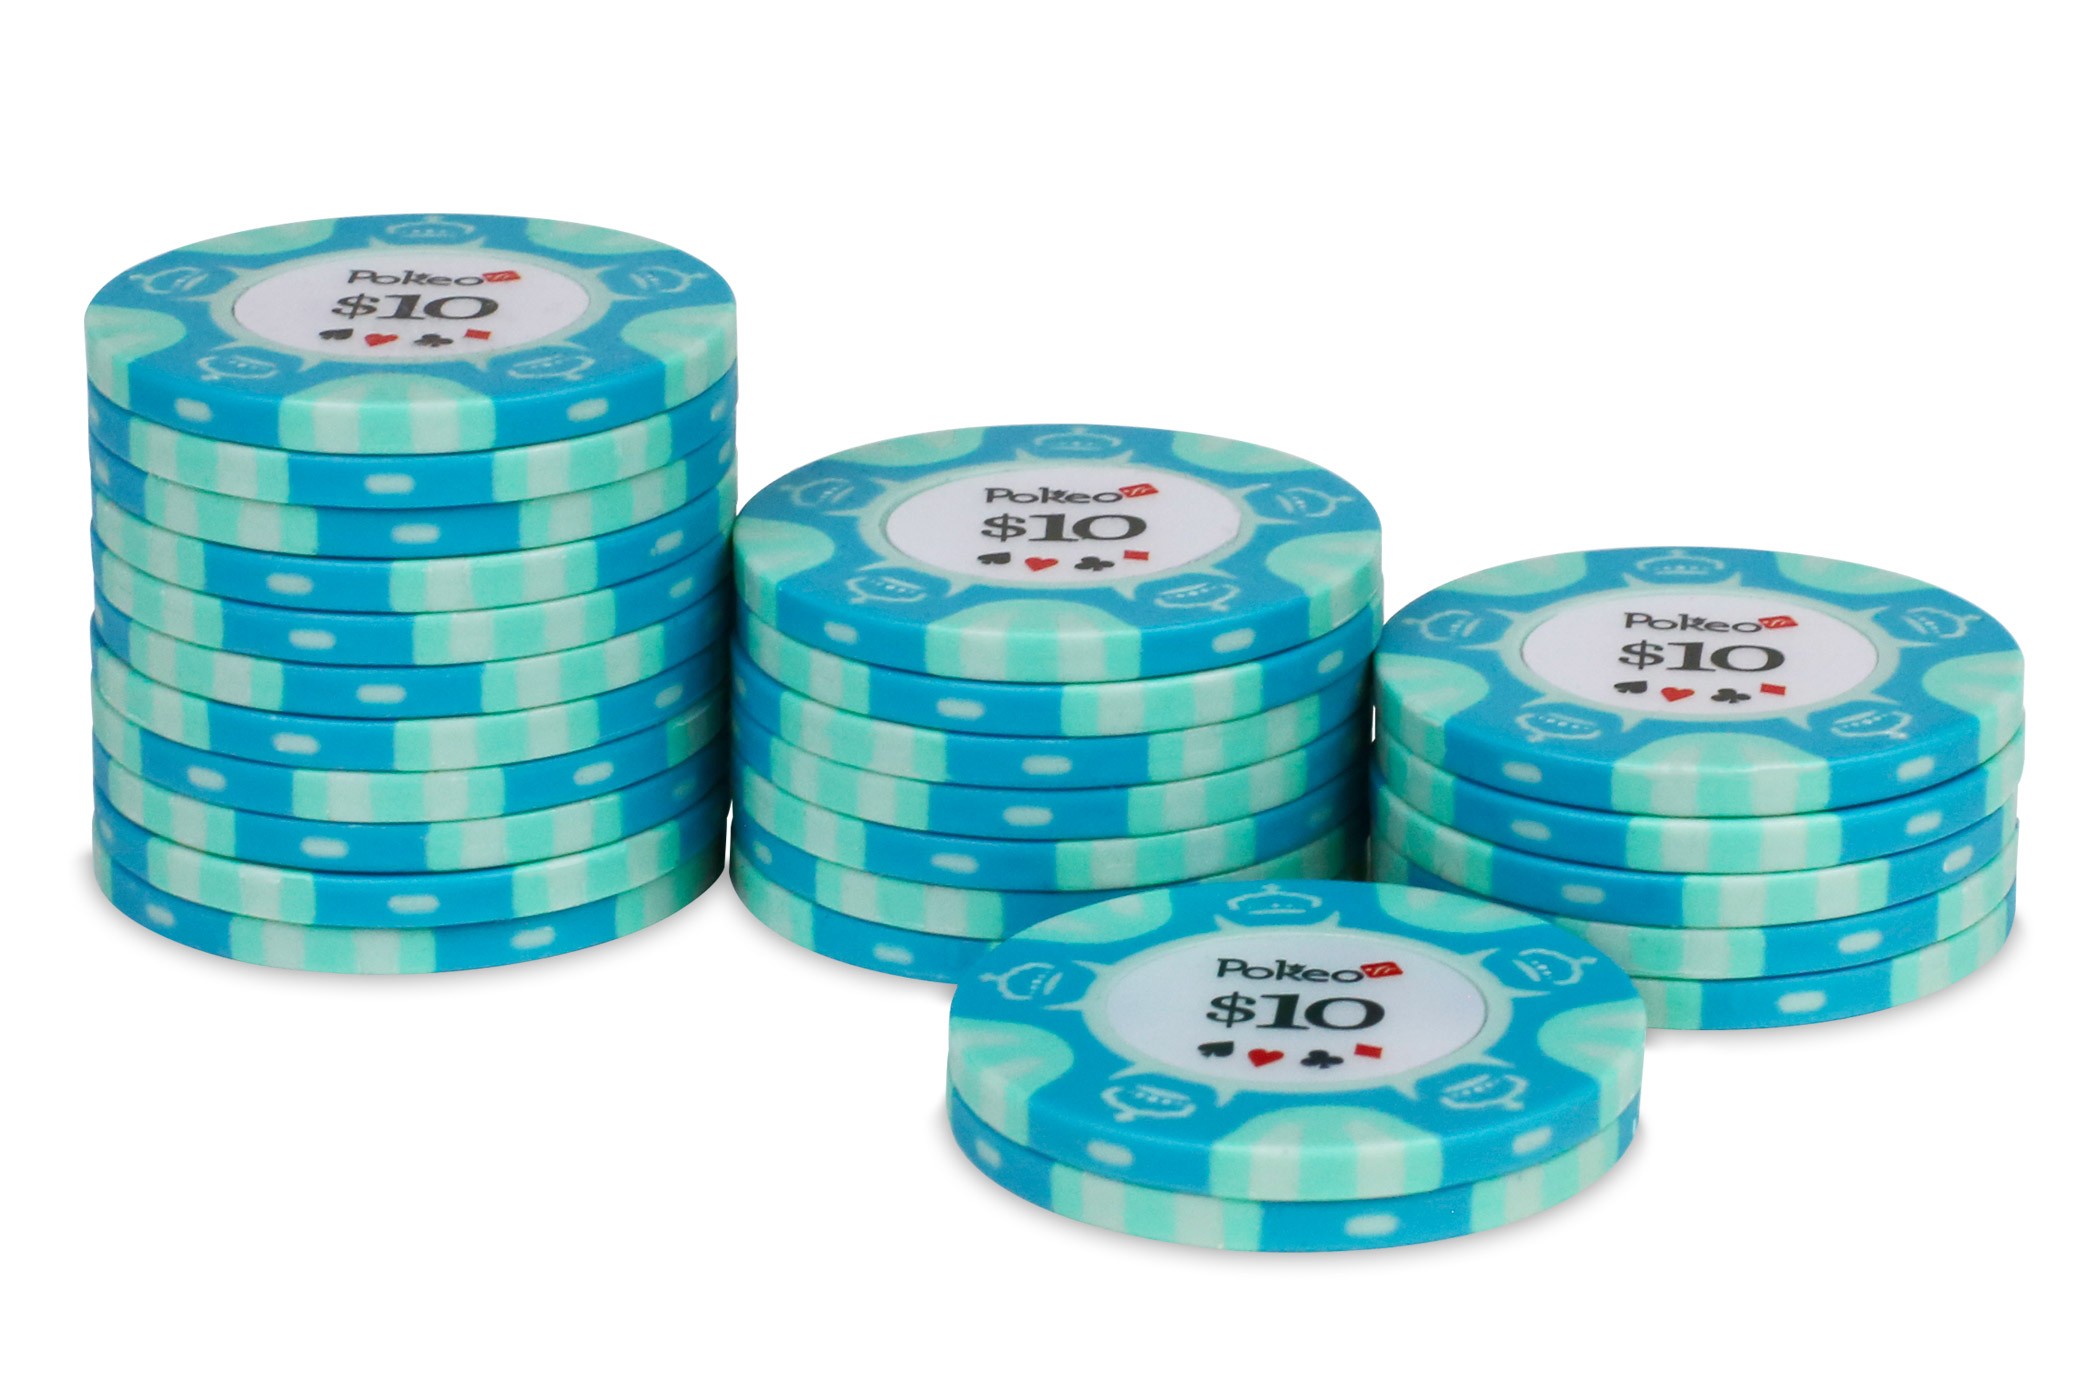 Jeu de cartes de poker modiano bleu clair